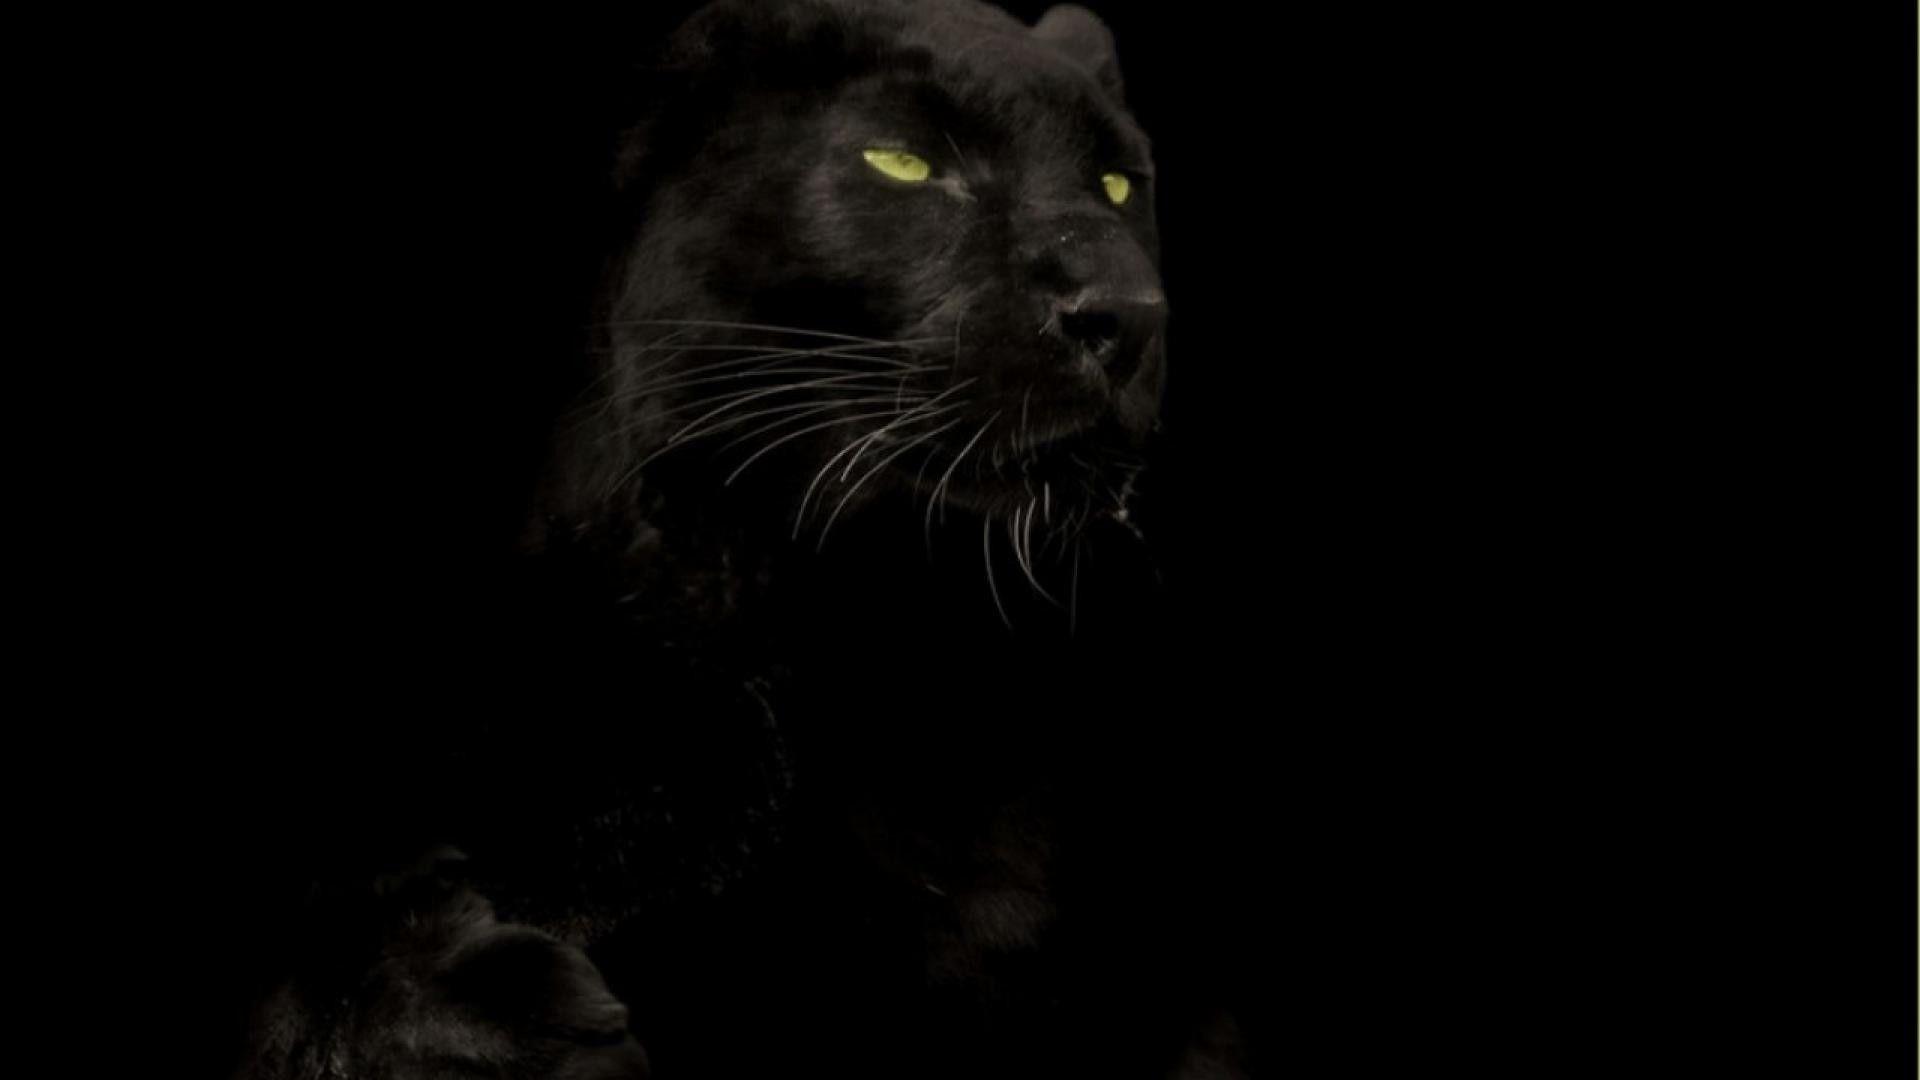 Wallpaper Hd 1080p Black Panther Animal